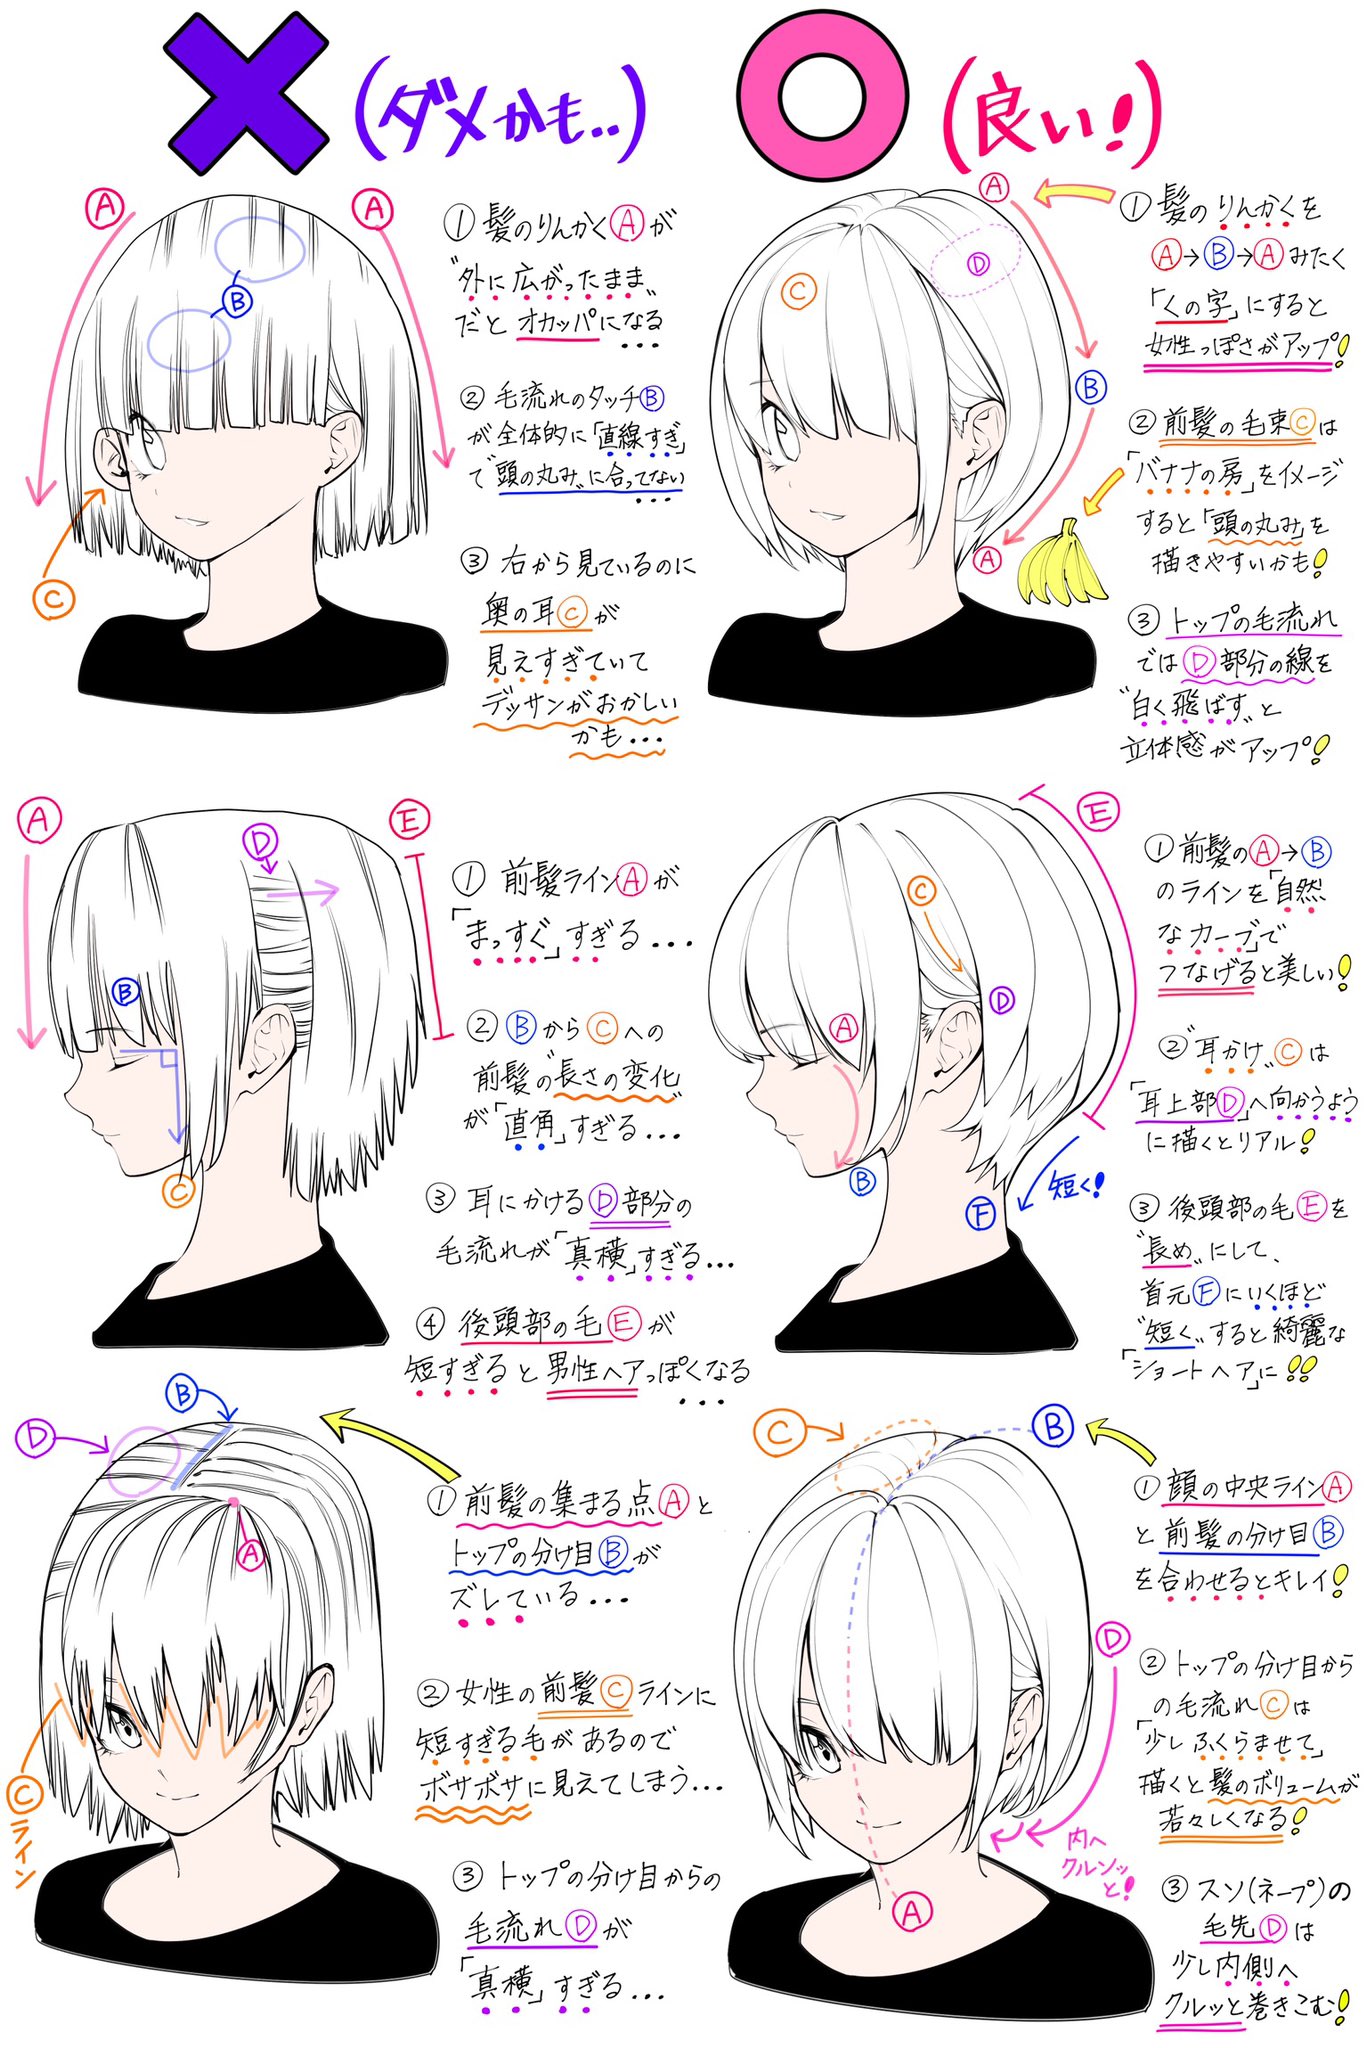 吉村拓也 イラスト講座 ショートヘアの描き方 女性の髪型 を描くときの ダメなこと と 良いこと